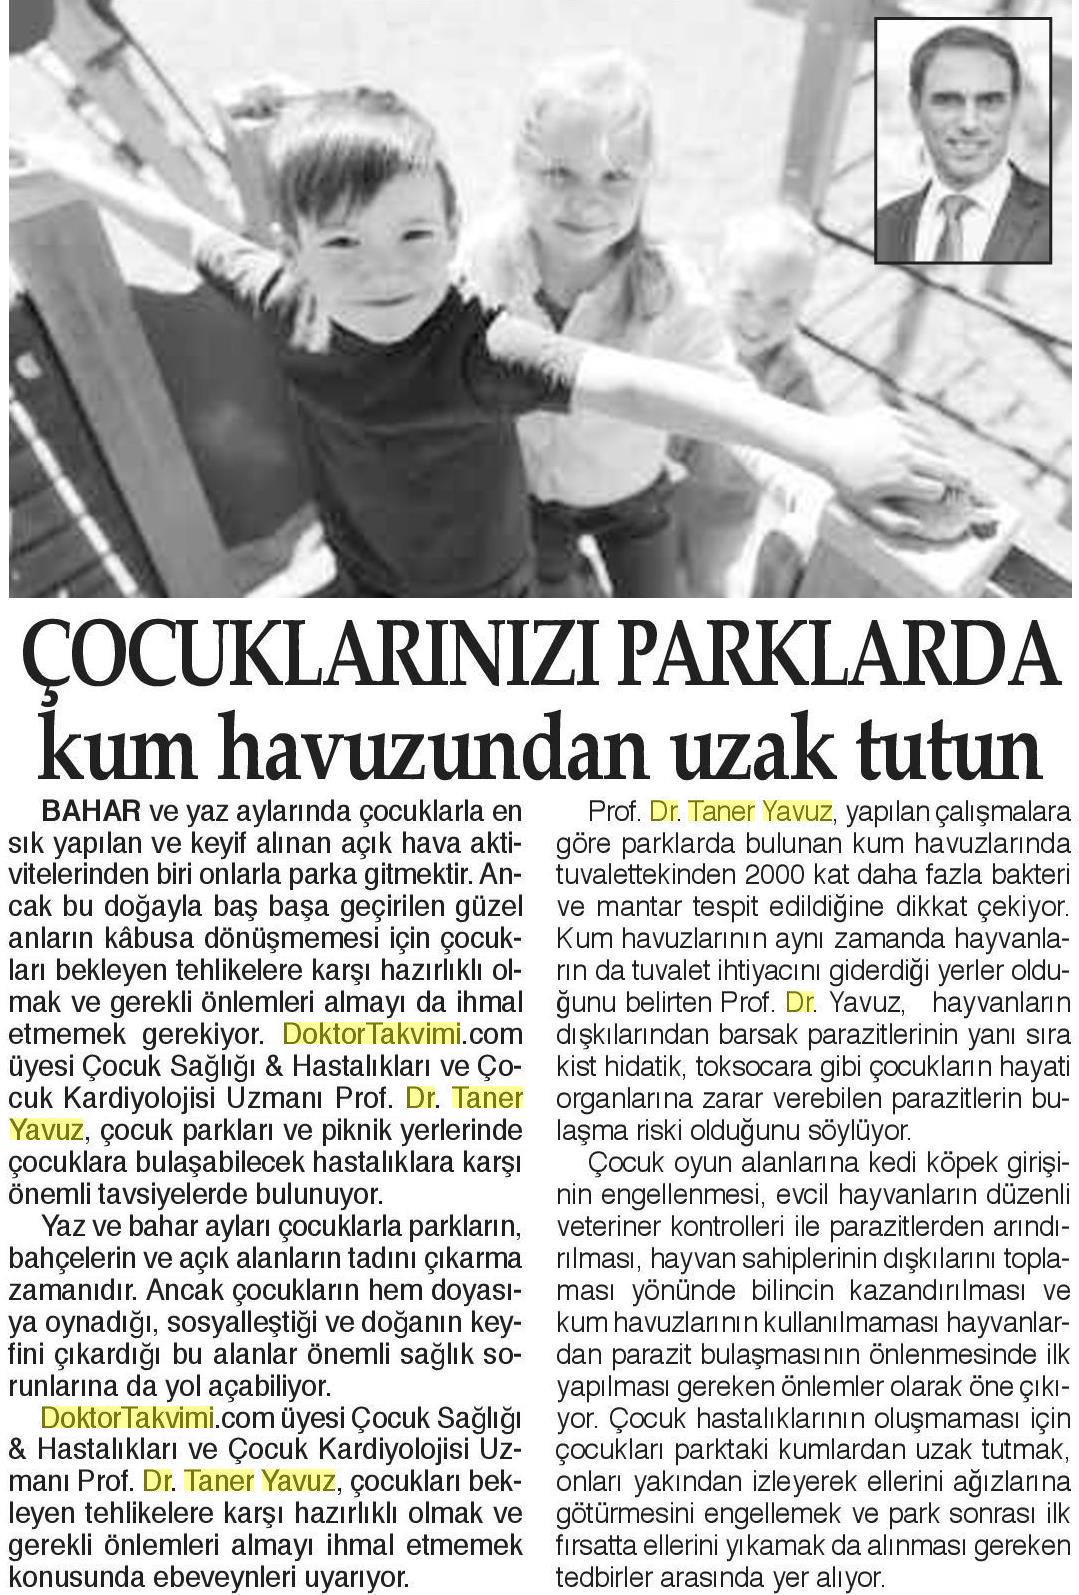 05.03.2019	Bizim Anadolu Gazetesi	PARKLARDA KUM HAVUZUNDAN IIZAK TUTUN BAHAR VE YAZ AYLARINDA